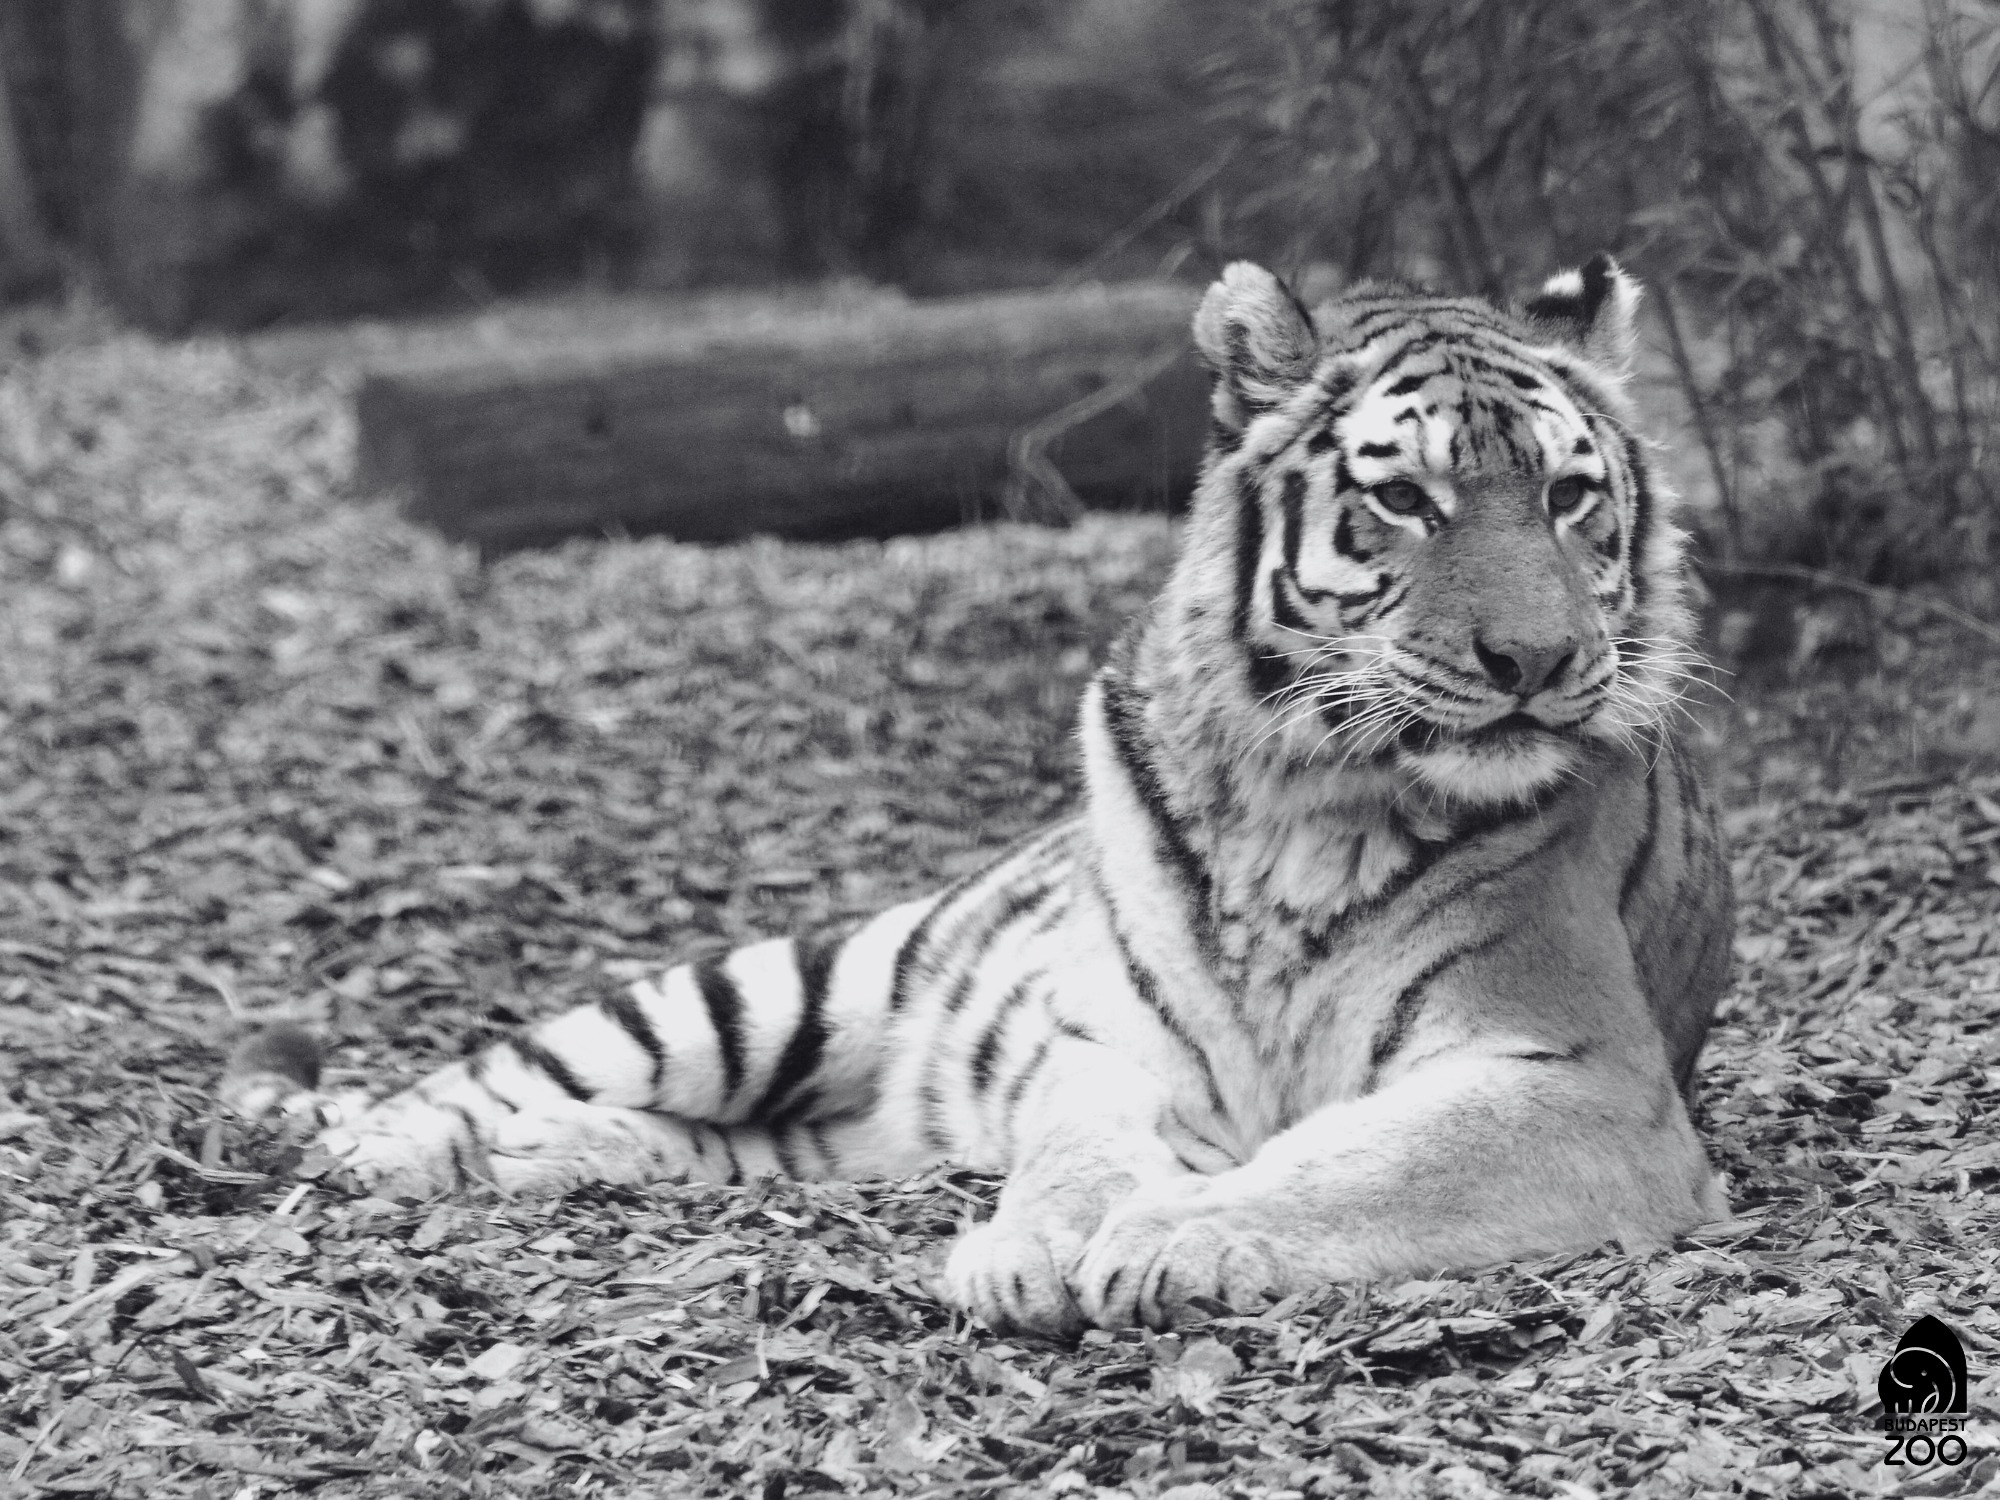 17 éves korában elaltatták Nivát, a fővárosi állatkert nőstény szibériai tigrisét